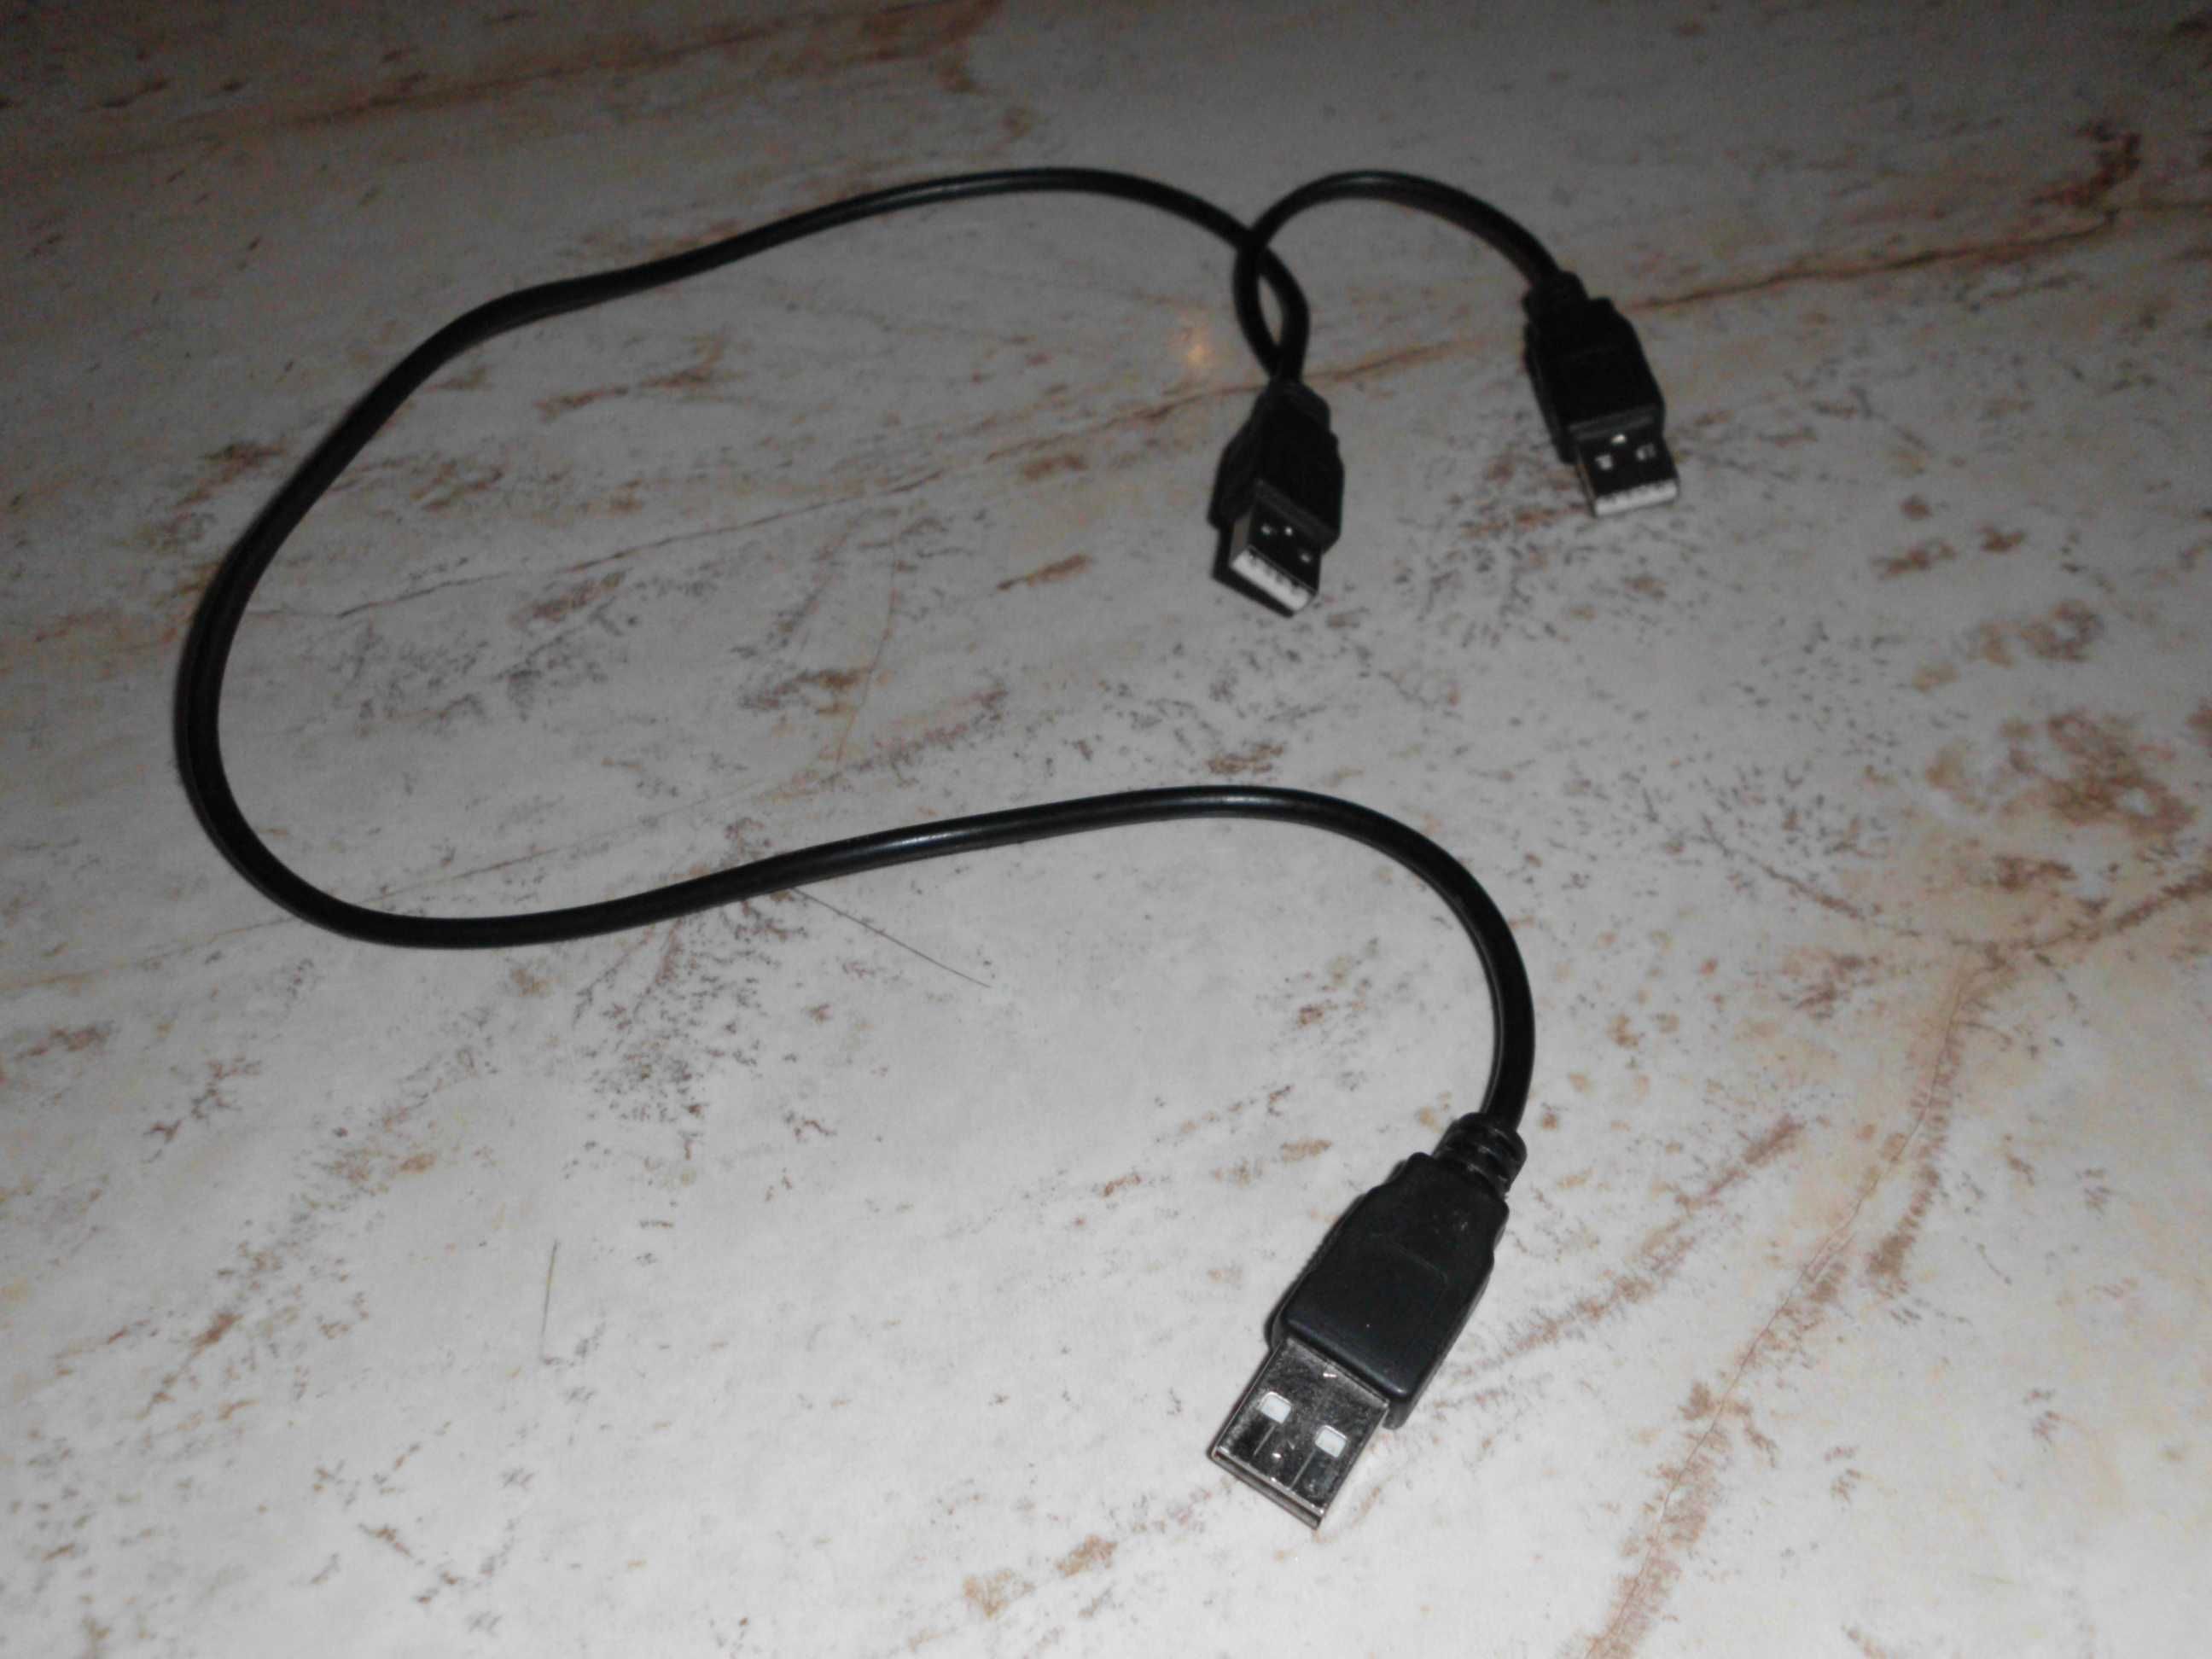 Cablu nou cu un USB pe un capat si cu 2 USB – uri pe celalalt